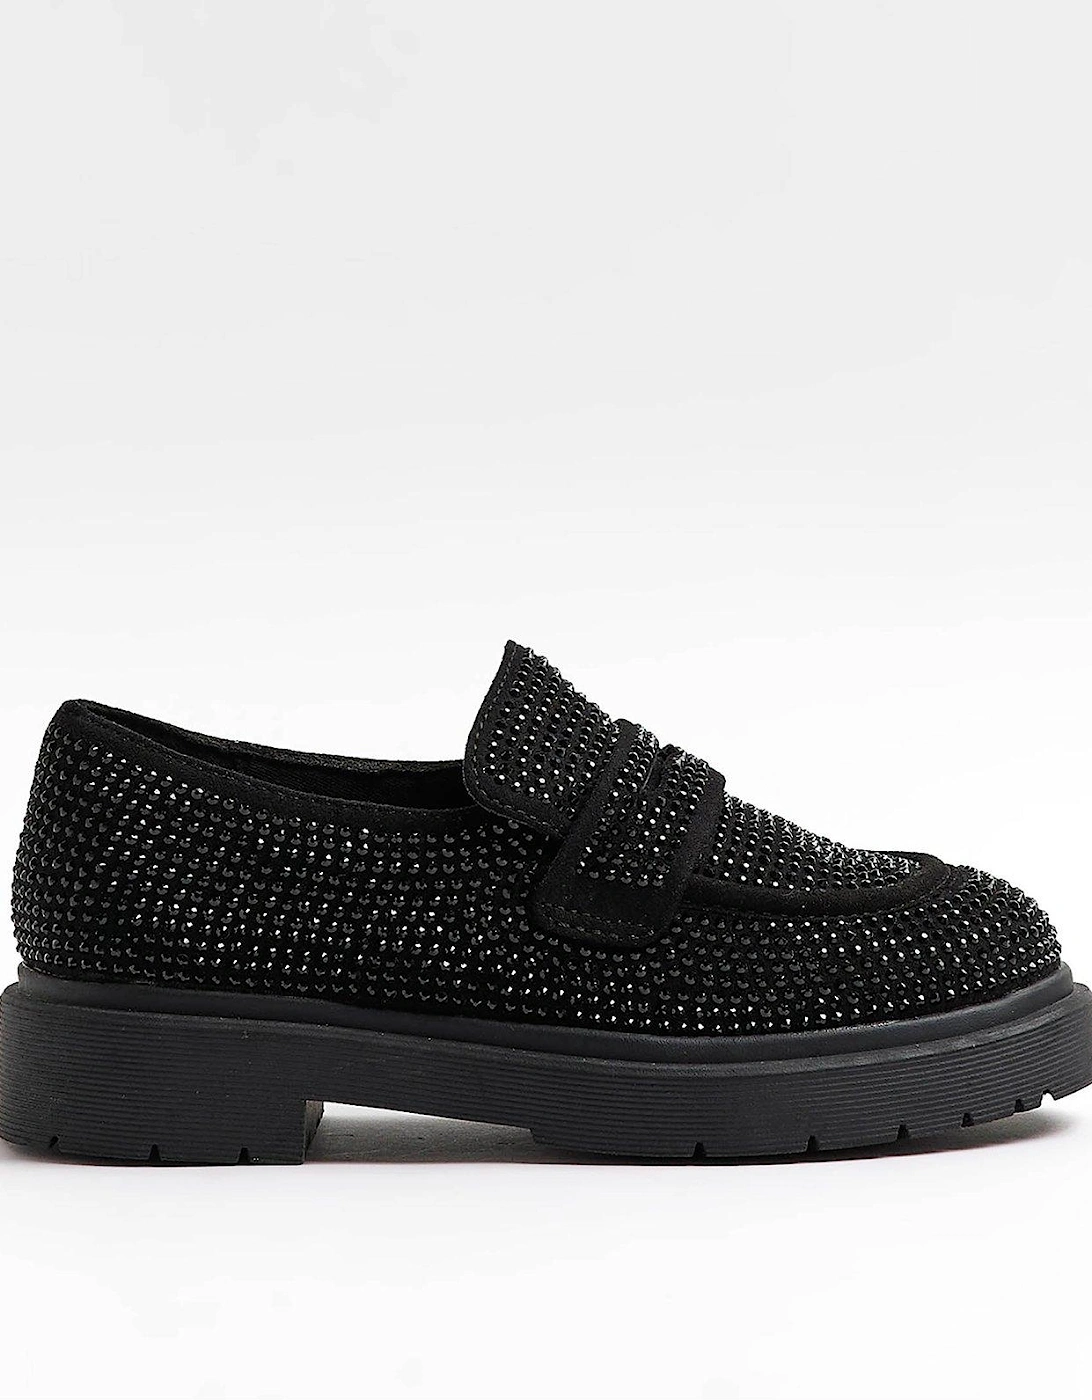 Girls Embellished Loafers - Black, 5 of 4